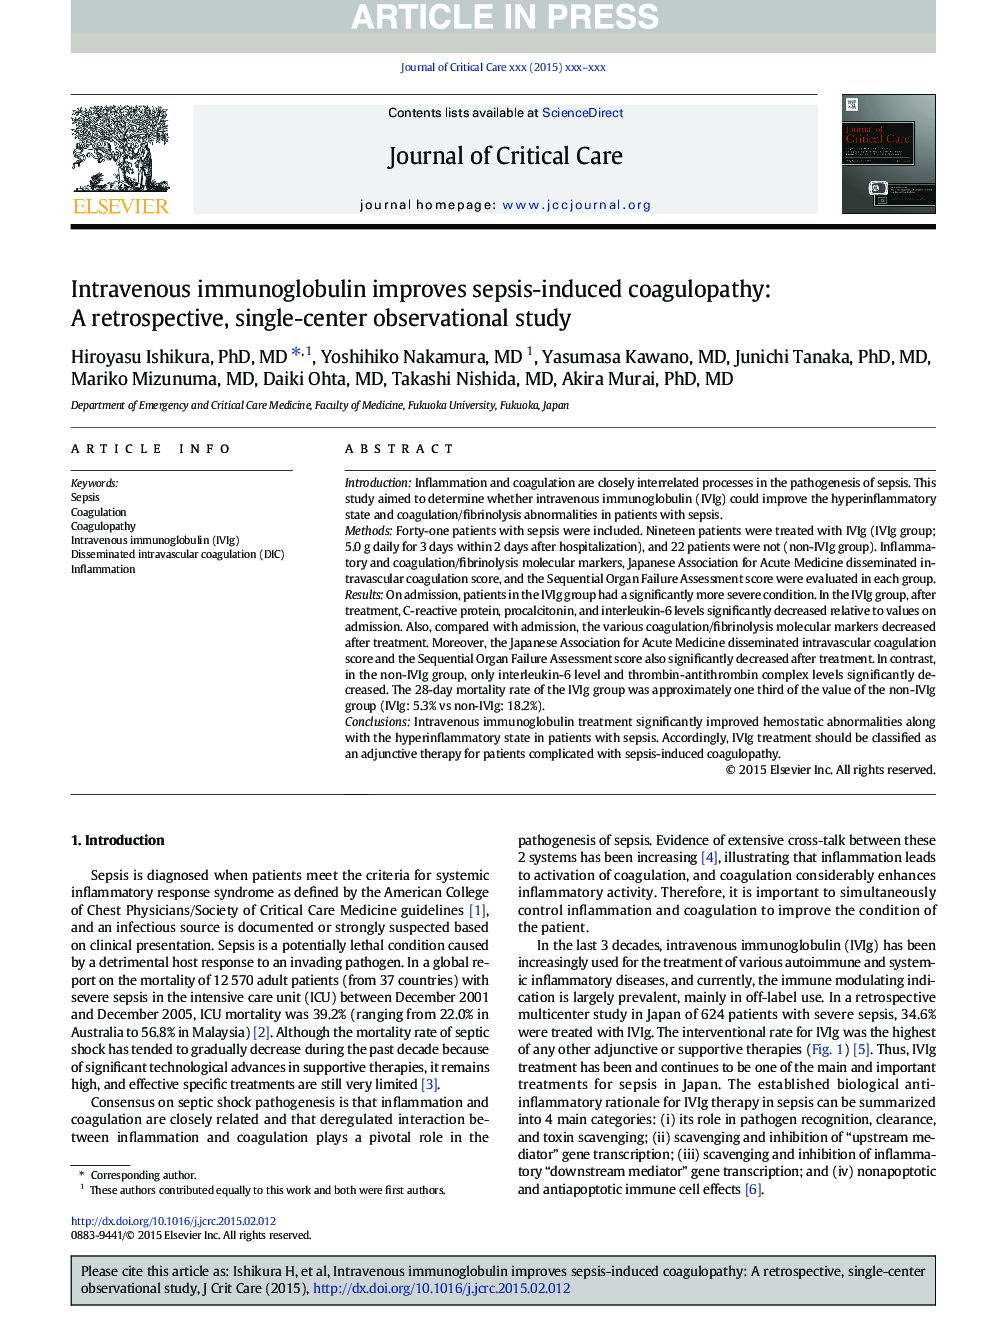 ایمونوگلوبولین داخل وریدی کواگولوپاتی ناشی از سپسیس را بهبود می بخشد: یک مطالعه گذشته نگر، مطالعه تک محوری 